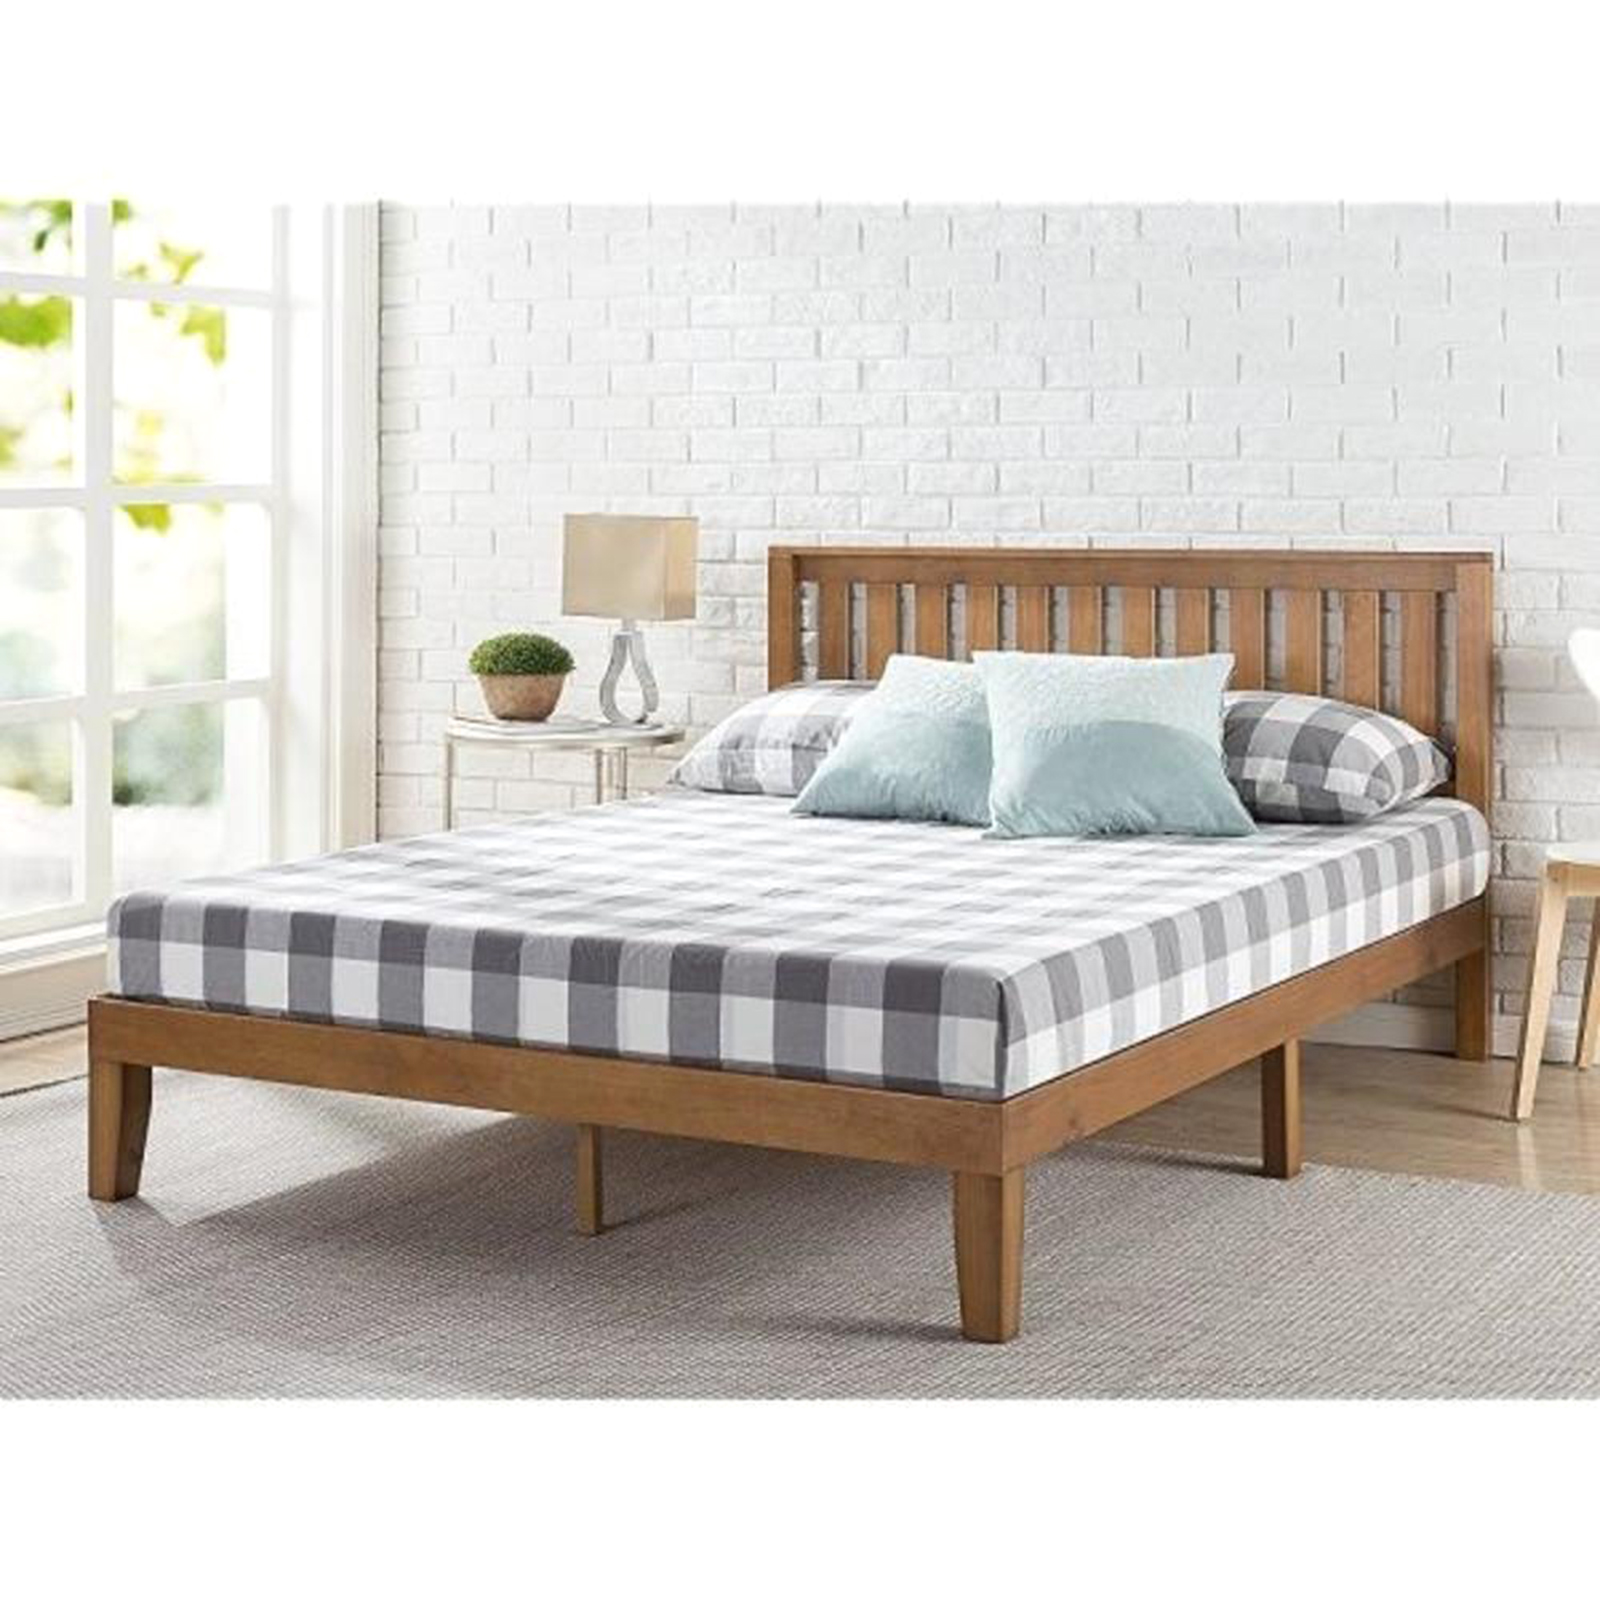 Zinus Queen Wood Platform Bed Frame, Queen Wood Platform Bed Frame With Headboard